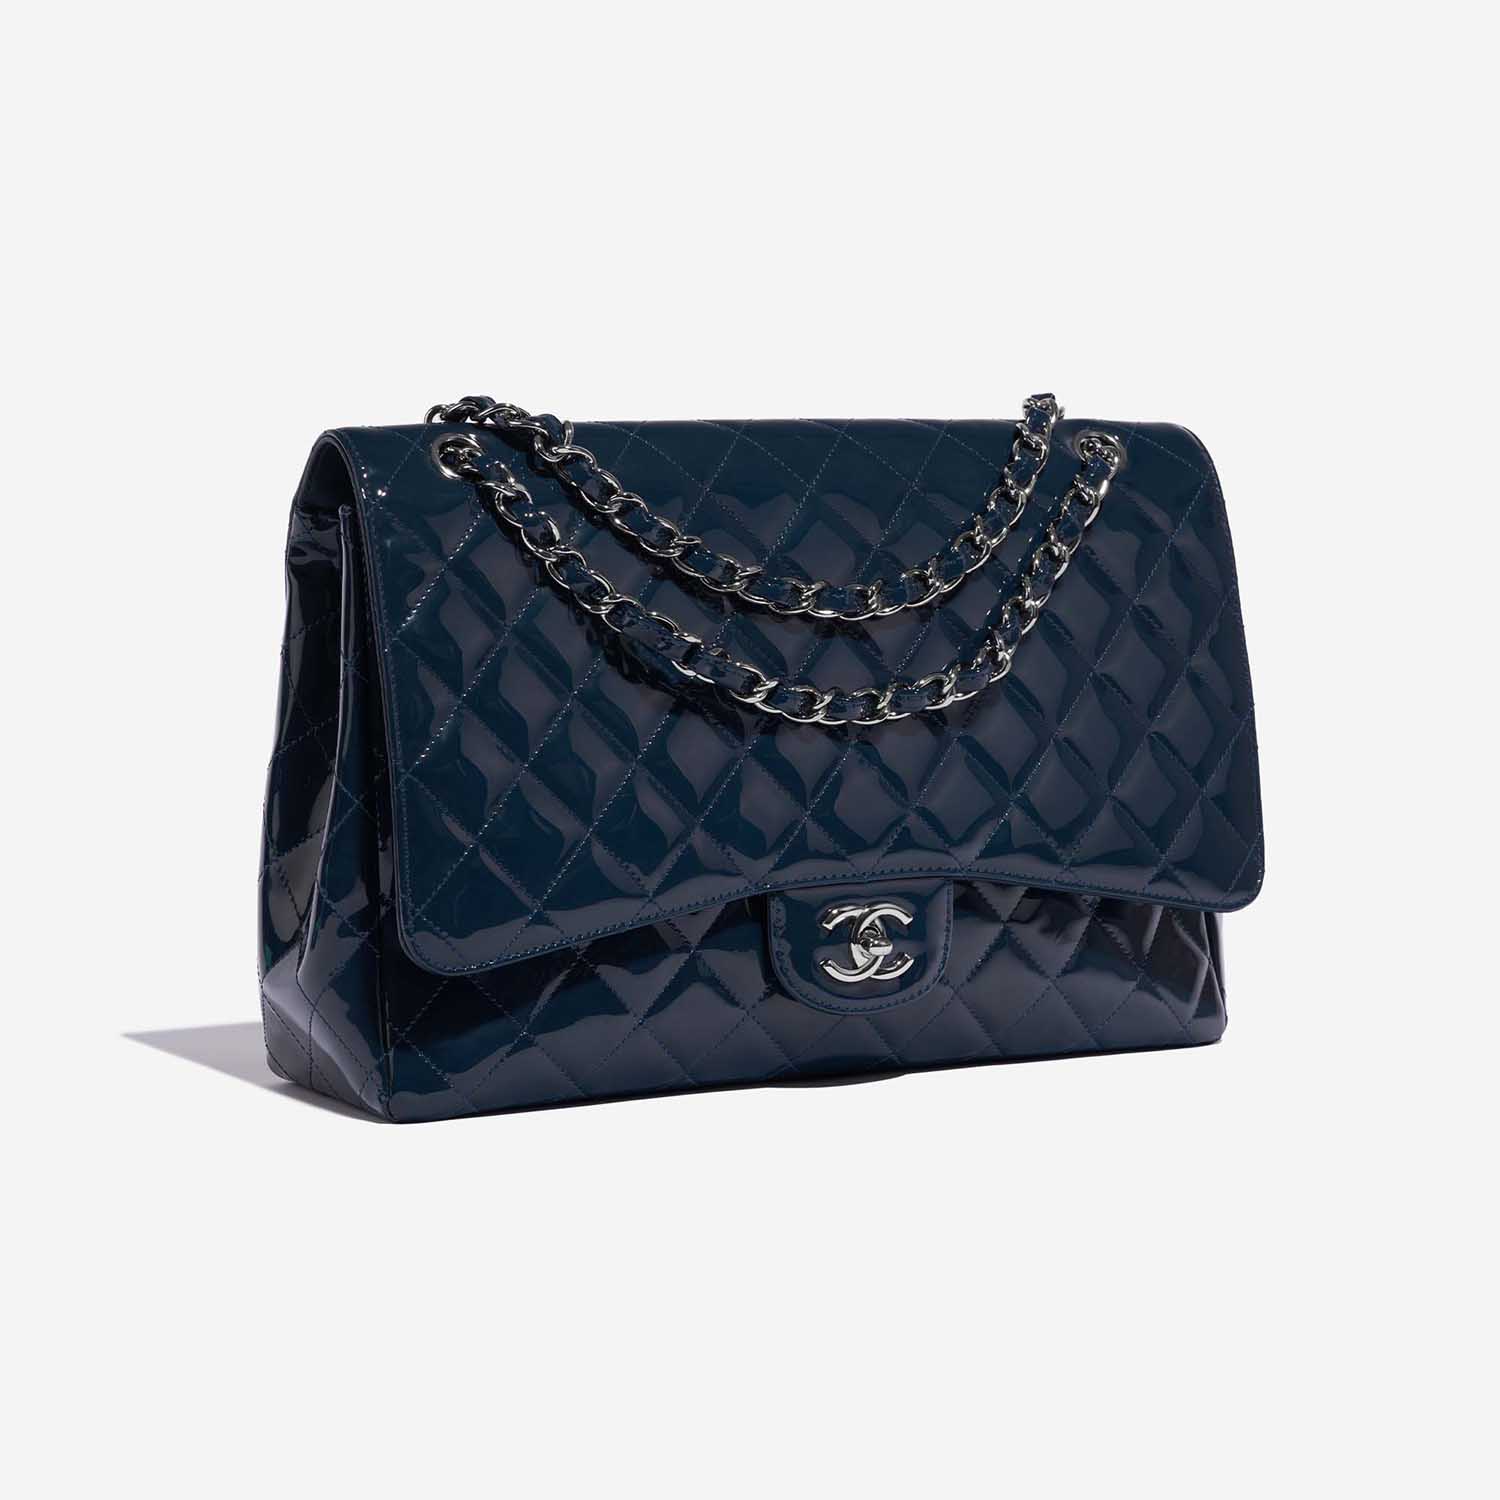 Sac Chanel d'occasion Classique Maxi Cuir Patenté Bleu Marine Side Front | Vendez votre sac de créateur sur Saclab.com